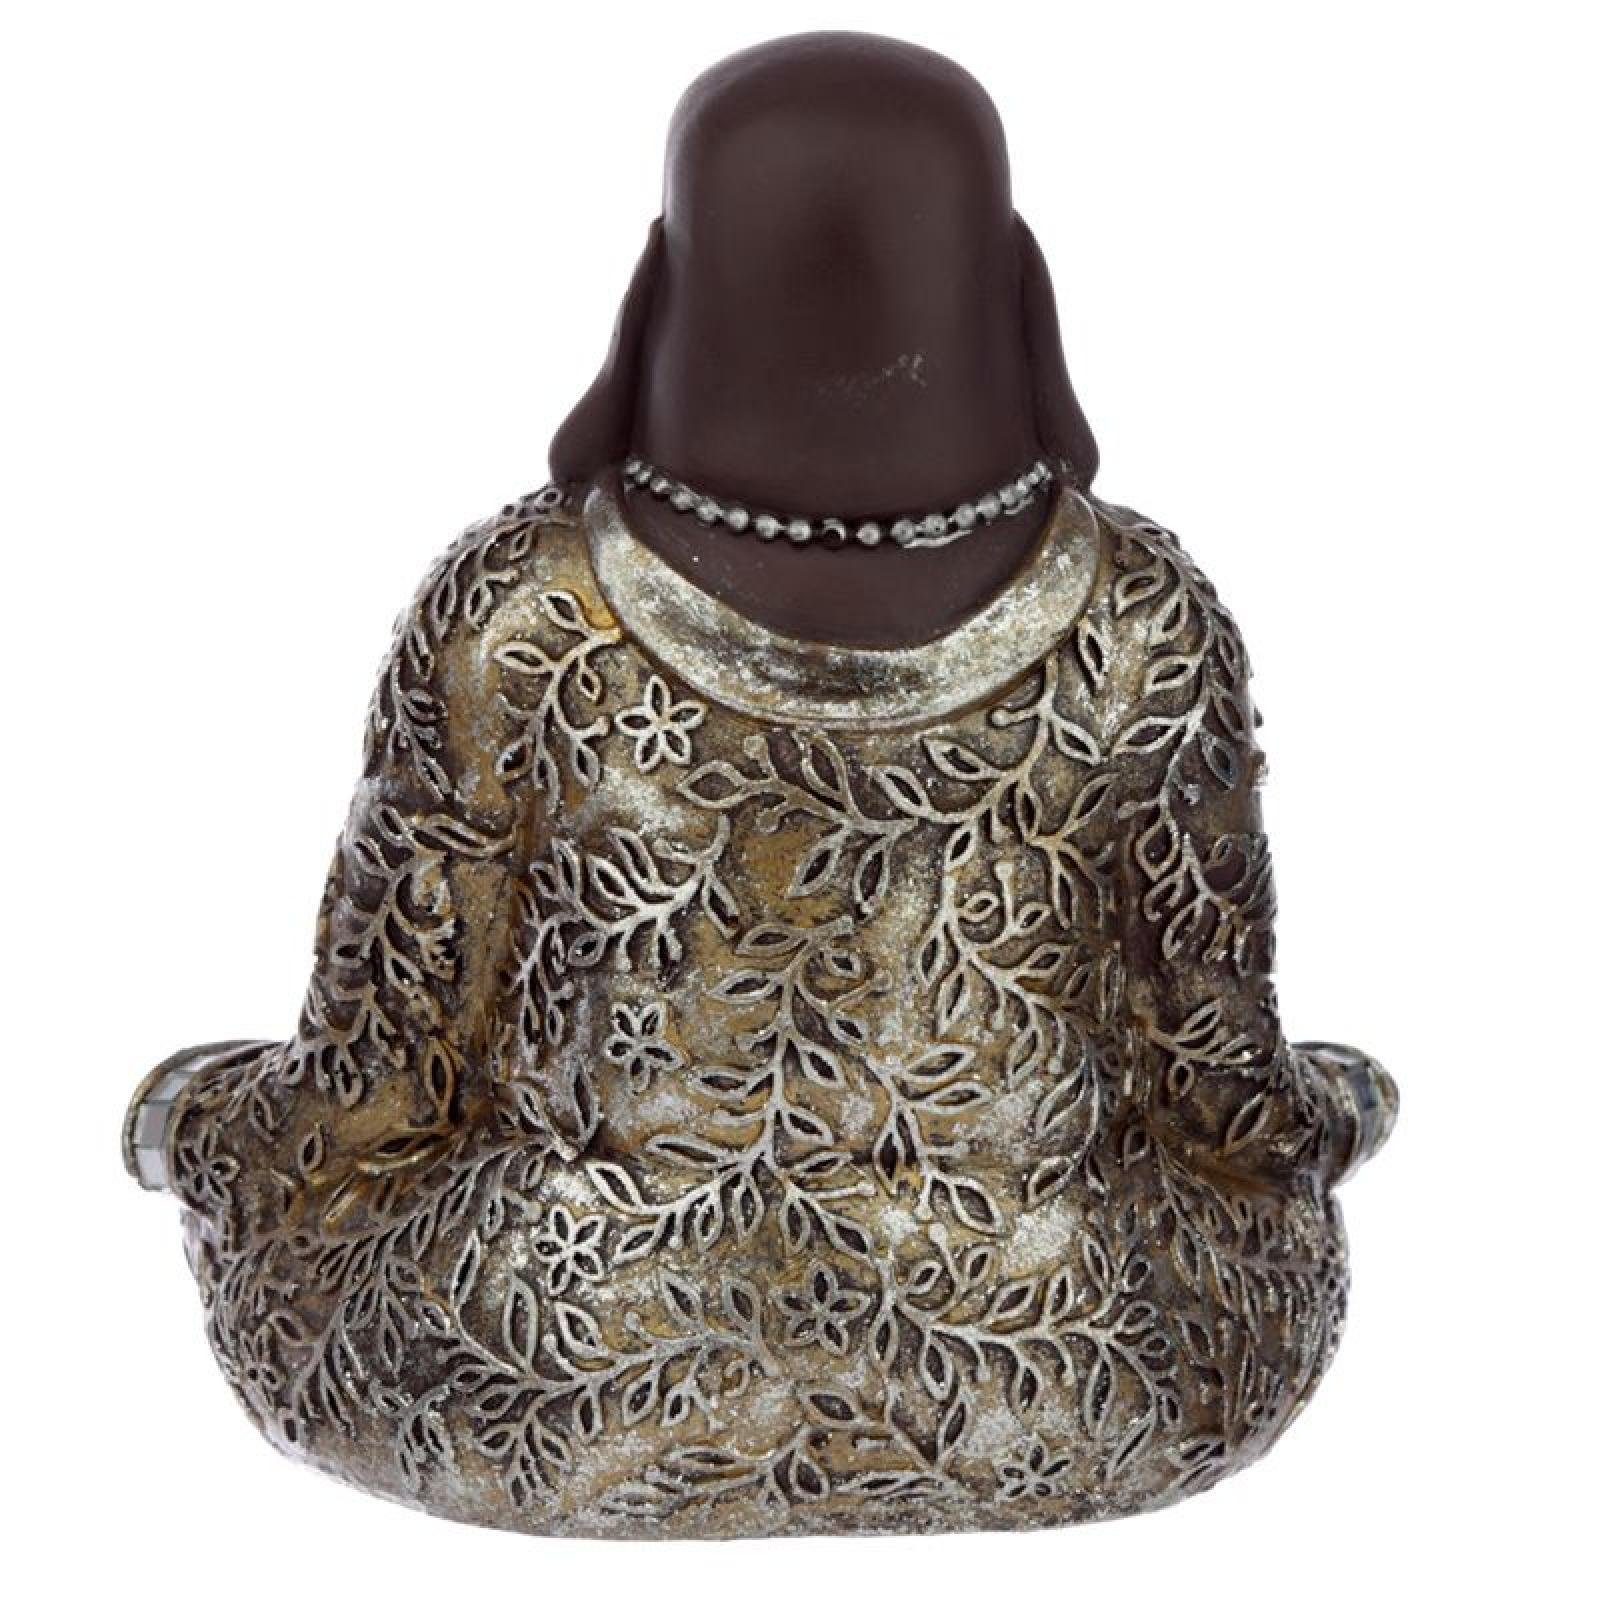 Puckator Buddhafigur Braun und Silber Lachender Chinesischer Sitzend Buddha